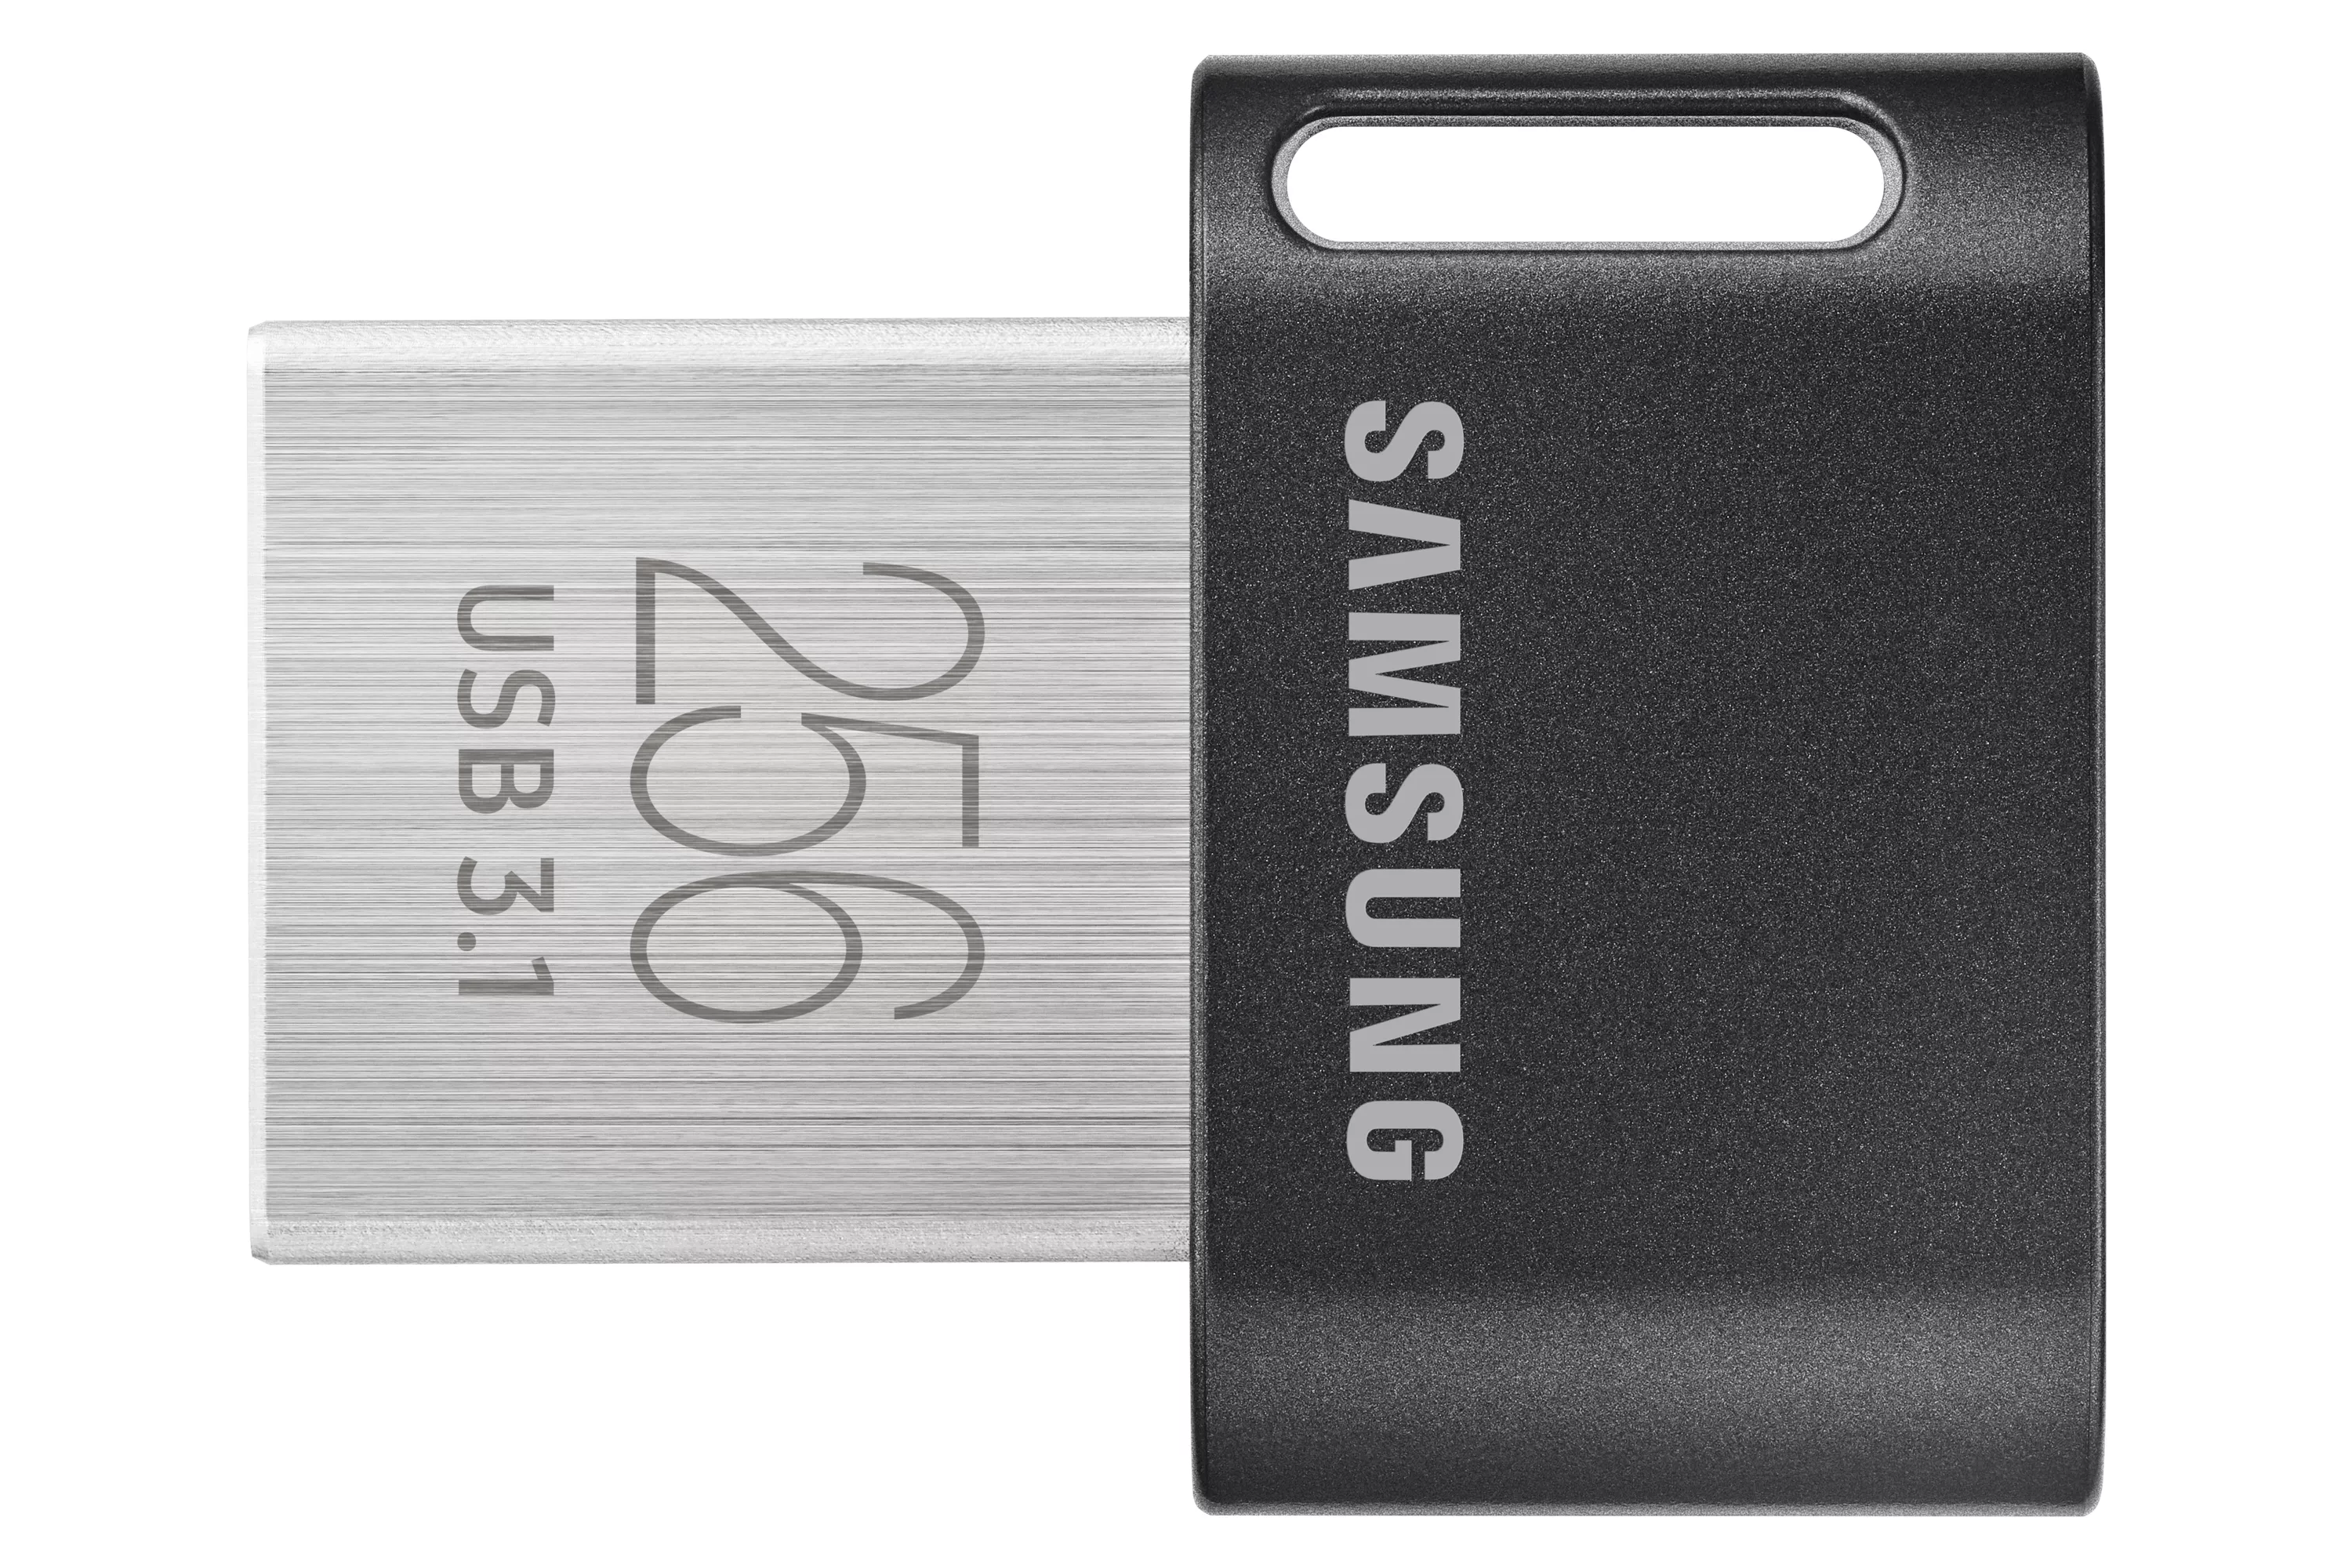 Achat SAMSUNG FIT PLUS 256Go USB 3.1 au meilleur prix